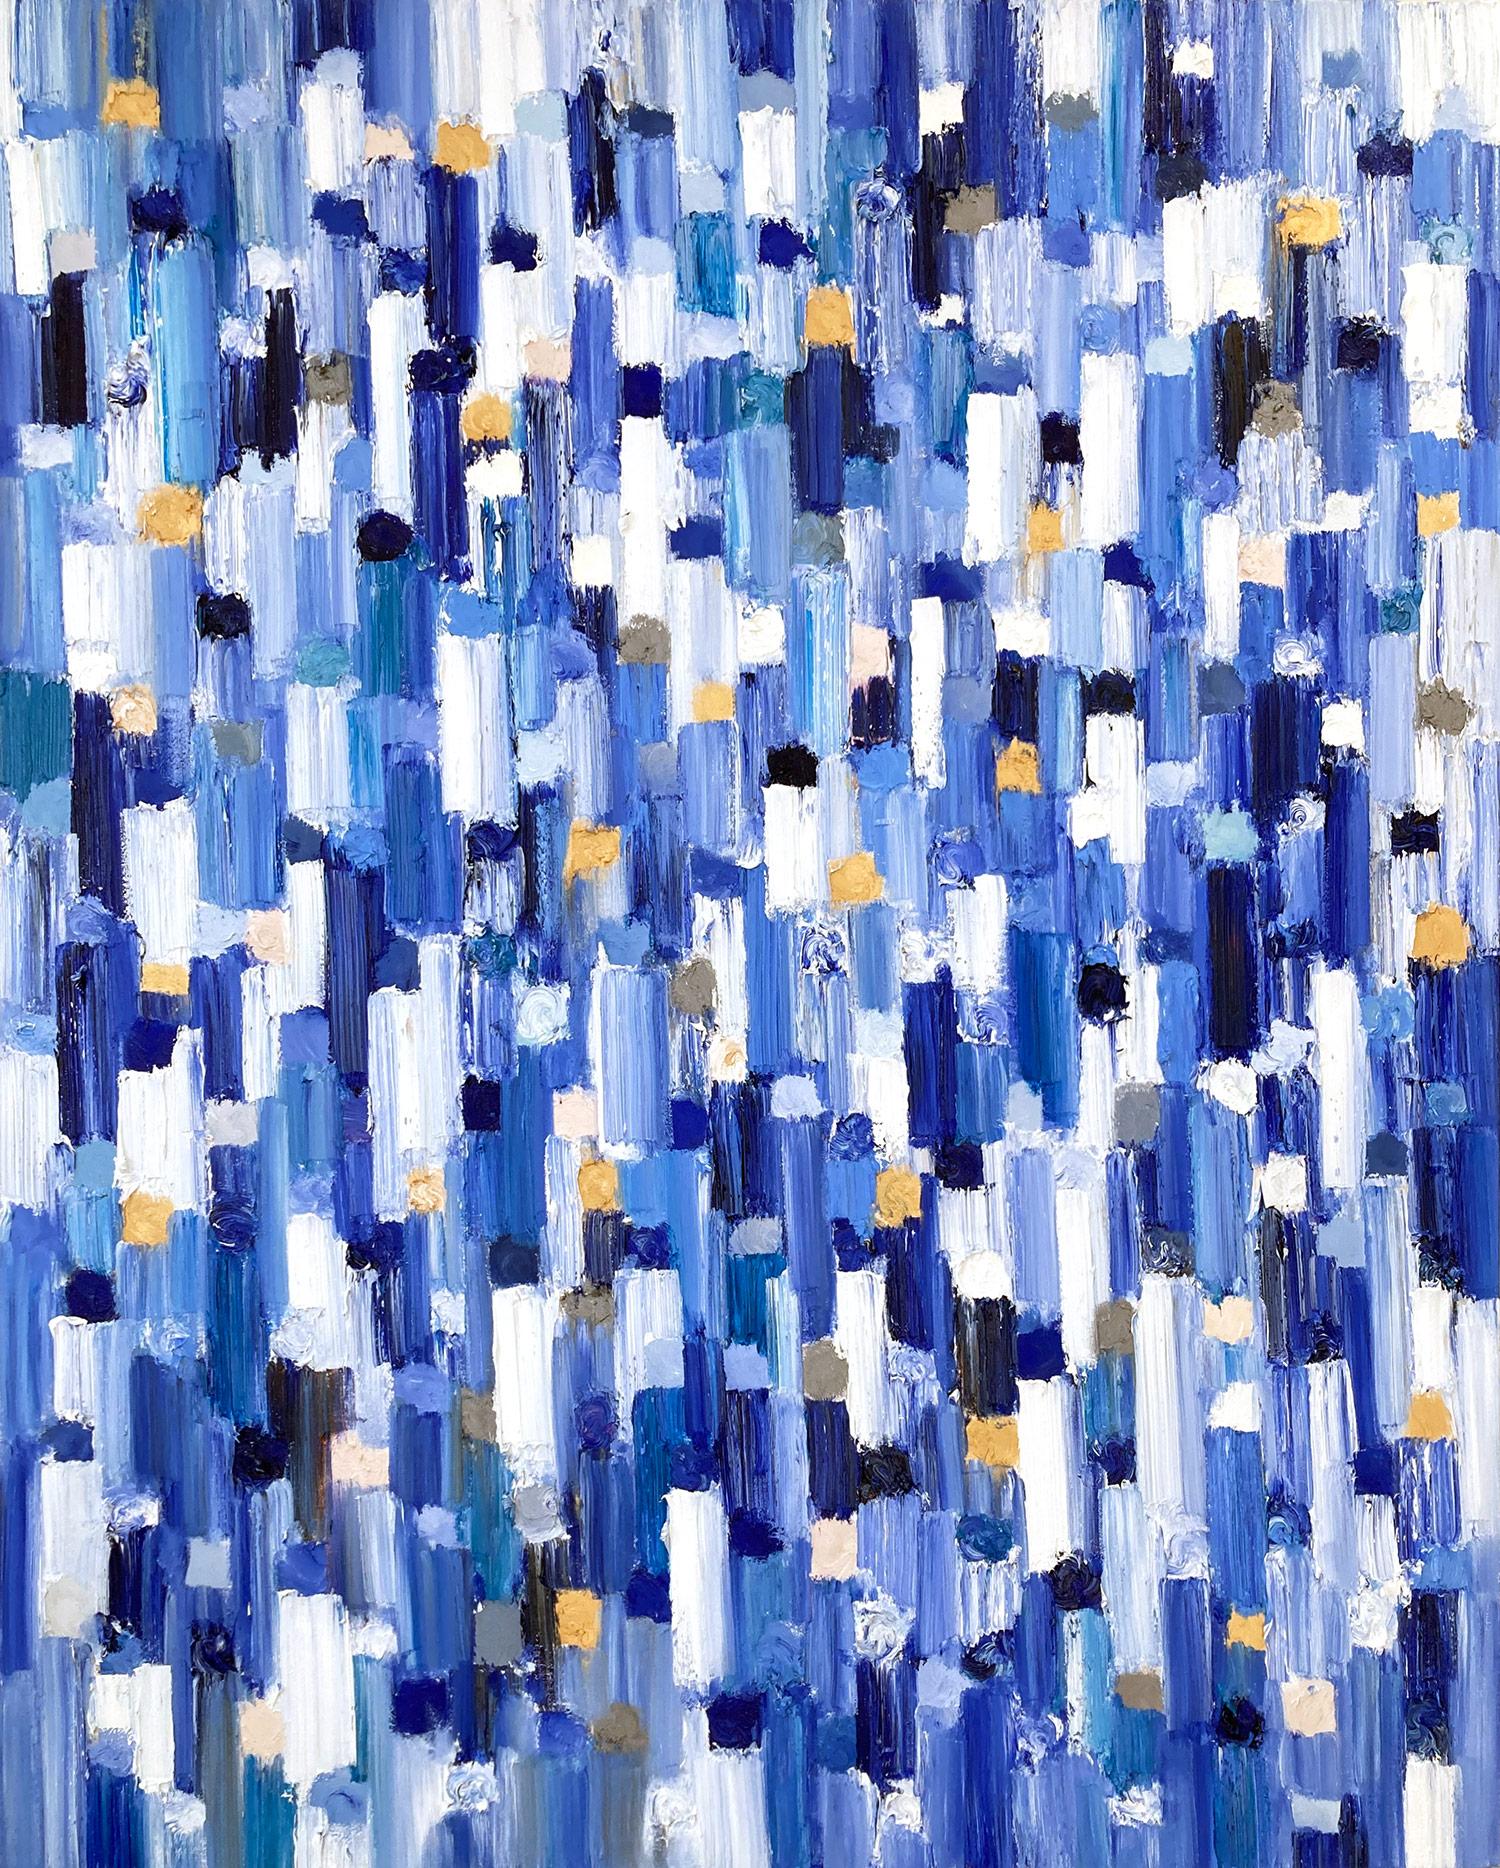 Abstract Painting Cindy Shaoul - "Dripping Dots - Genève" Peinture à l'huile abstraite contemporaine colorée sur toile